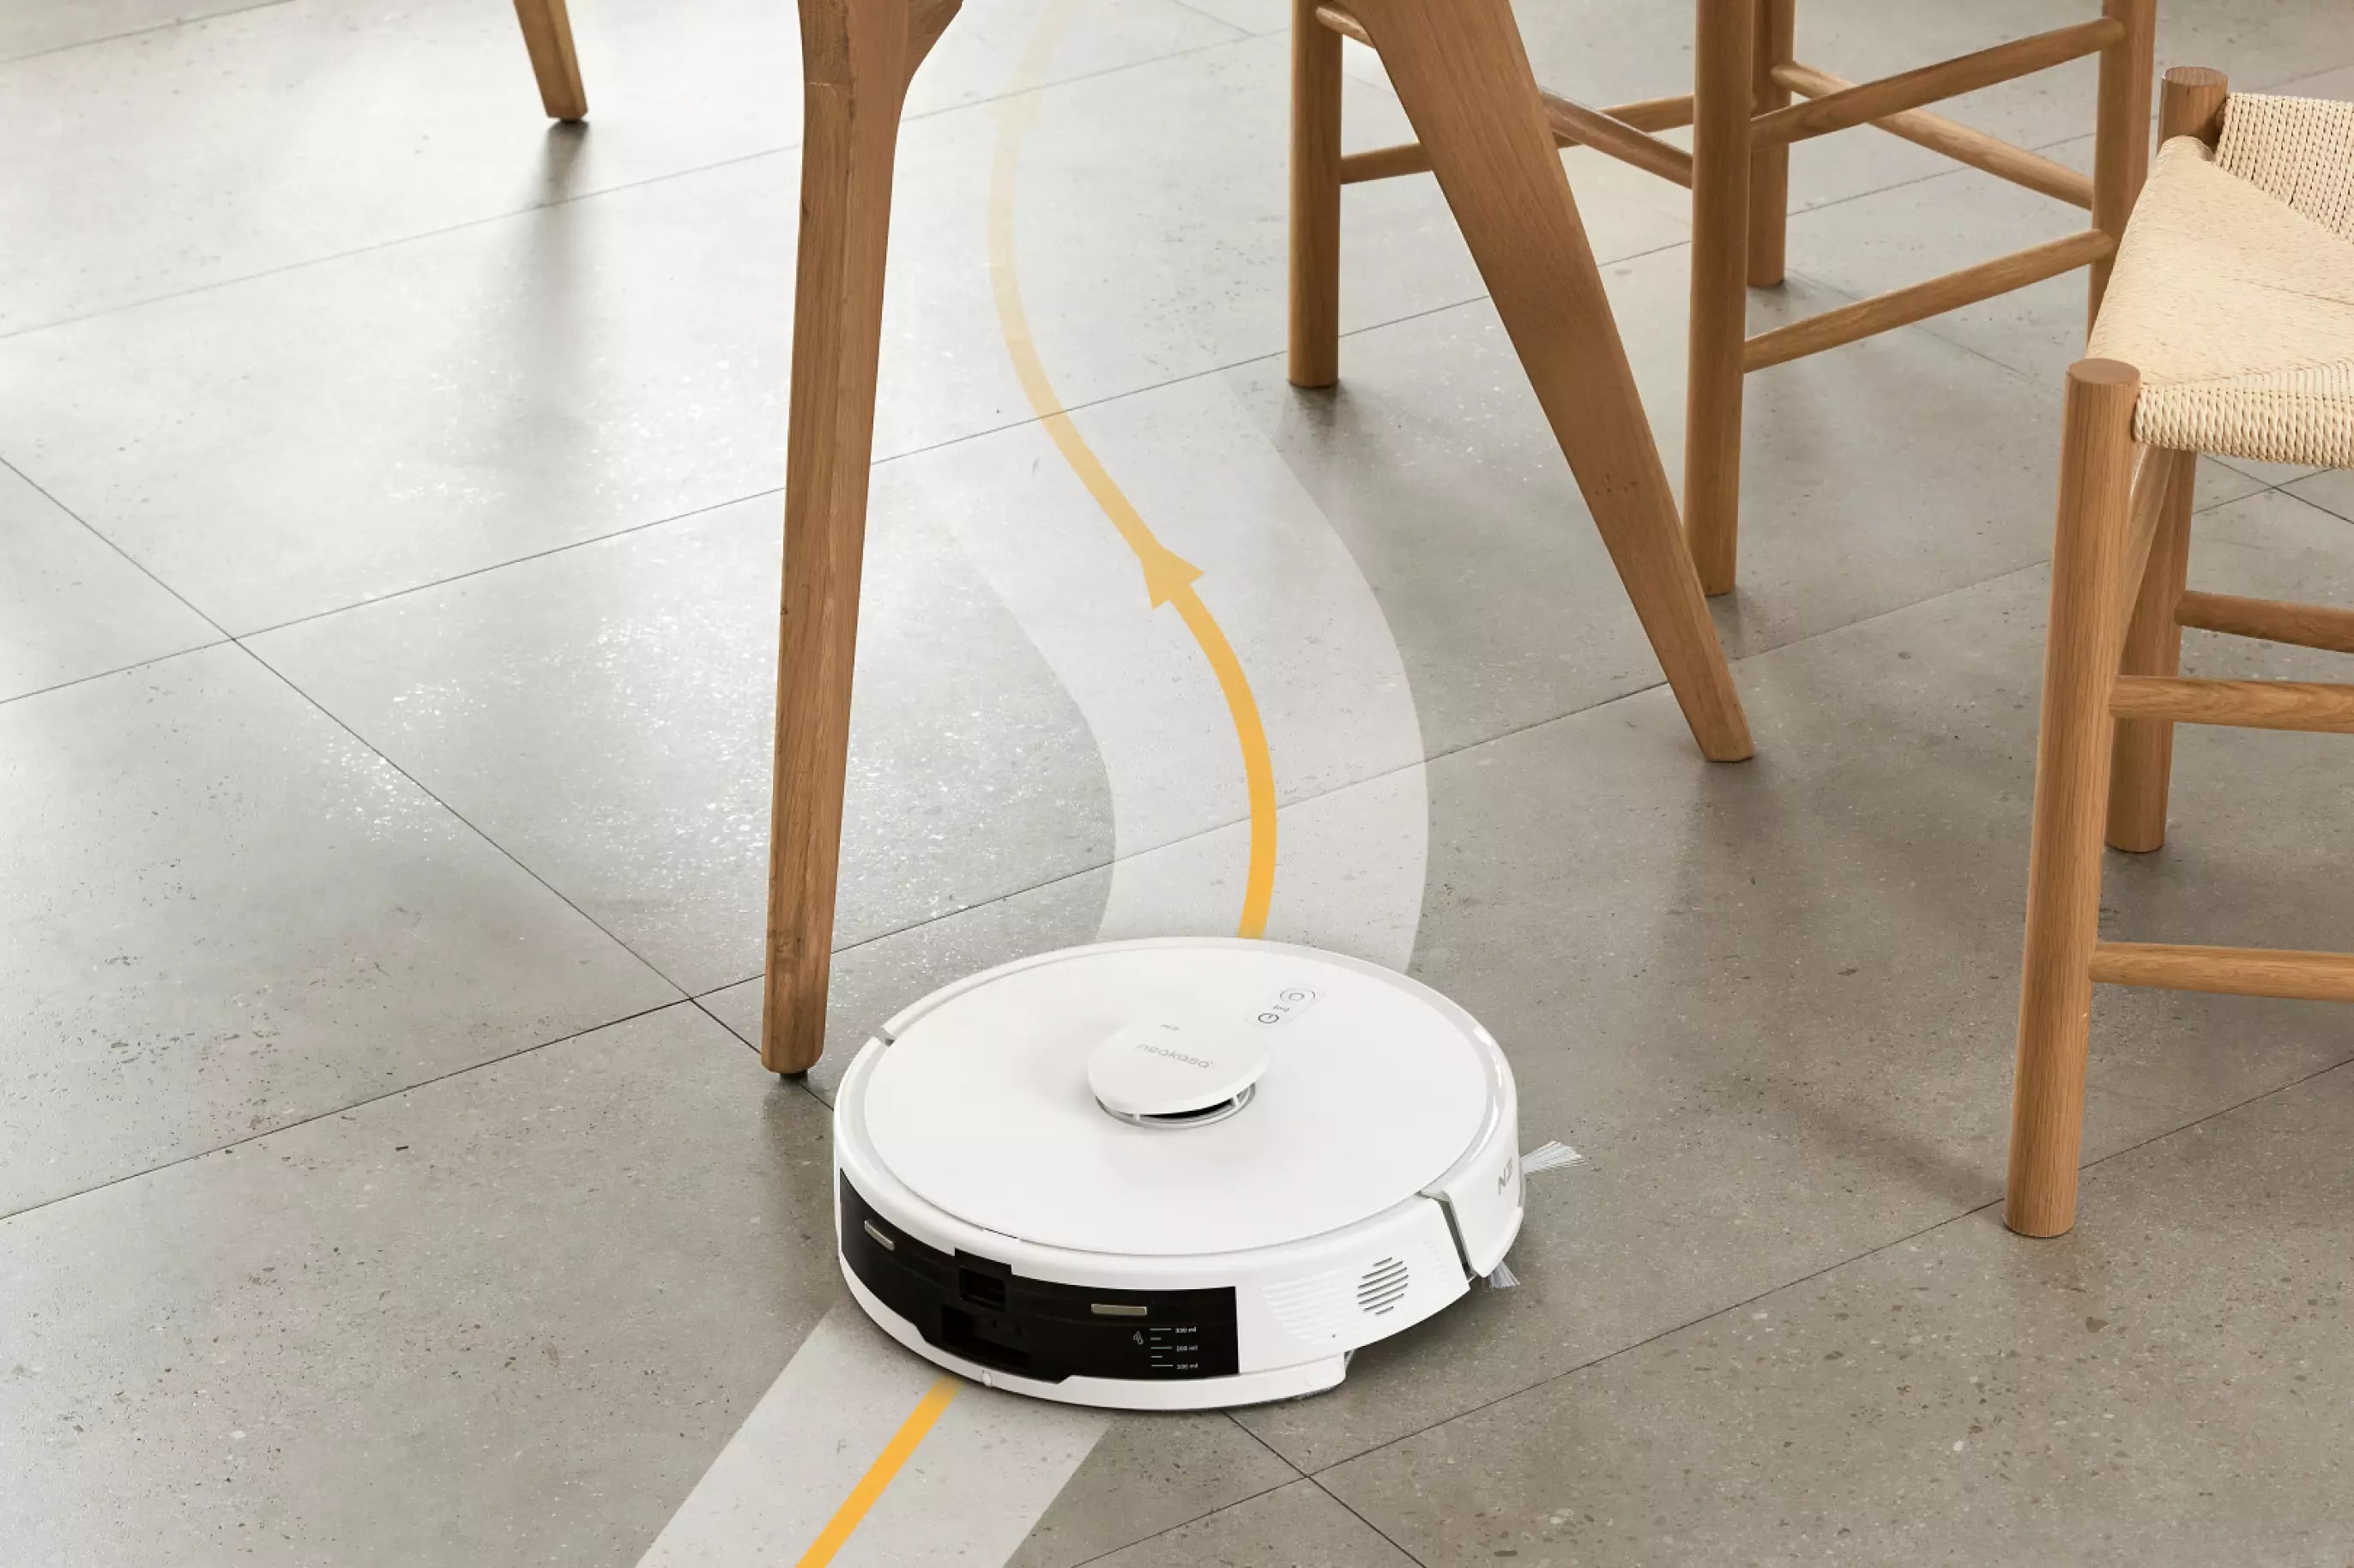 neakasa robot vacuum obstacle avoidance